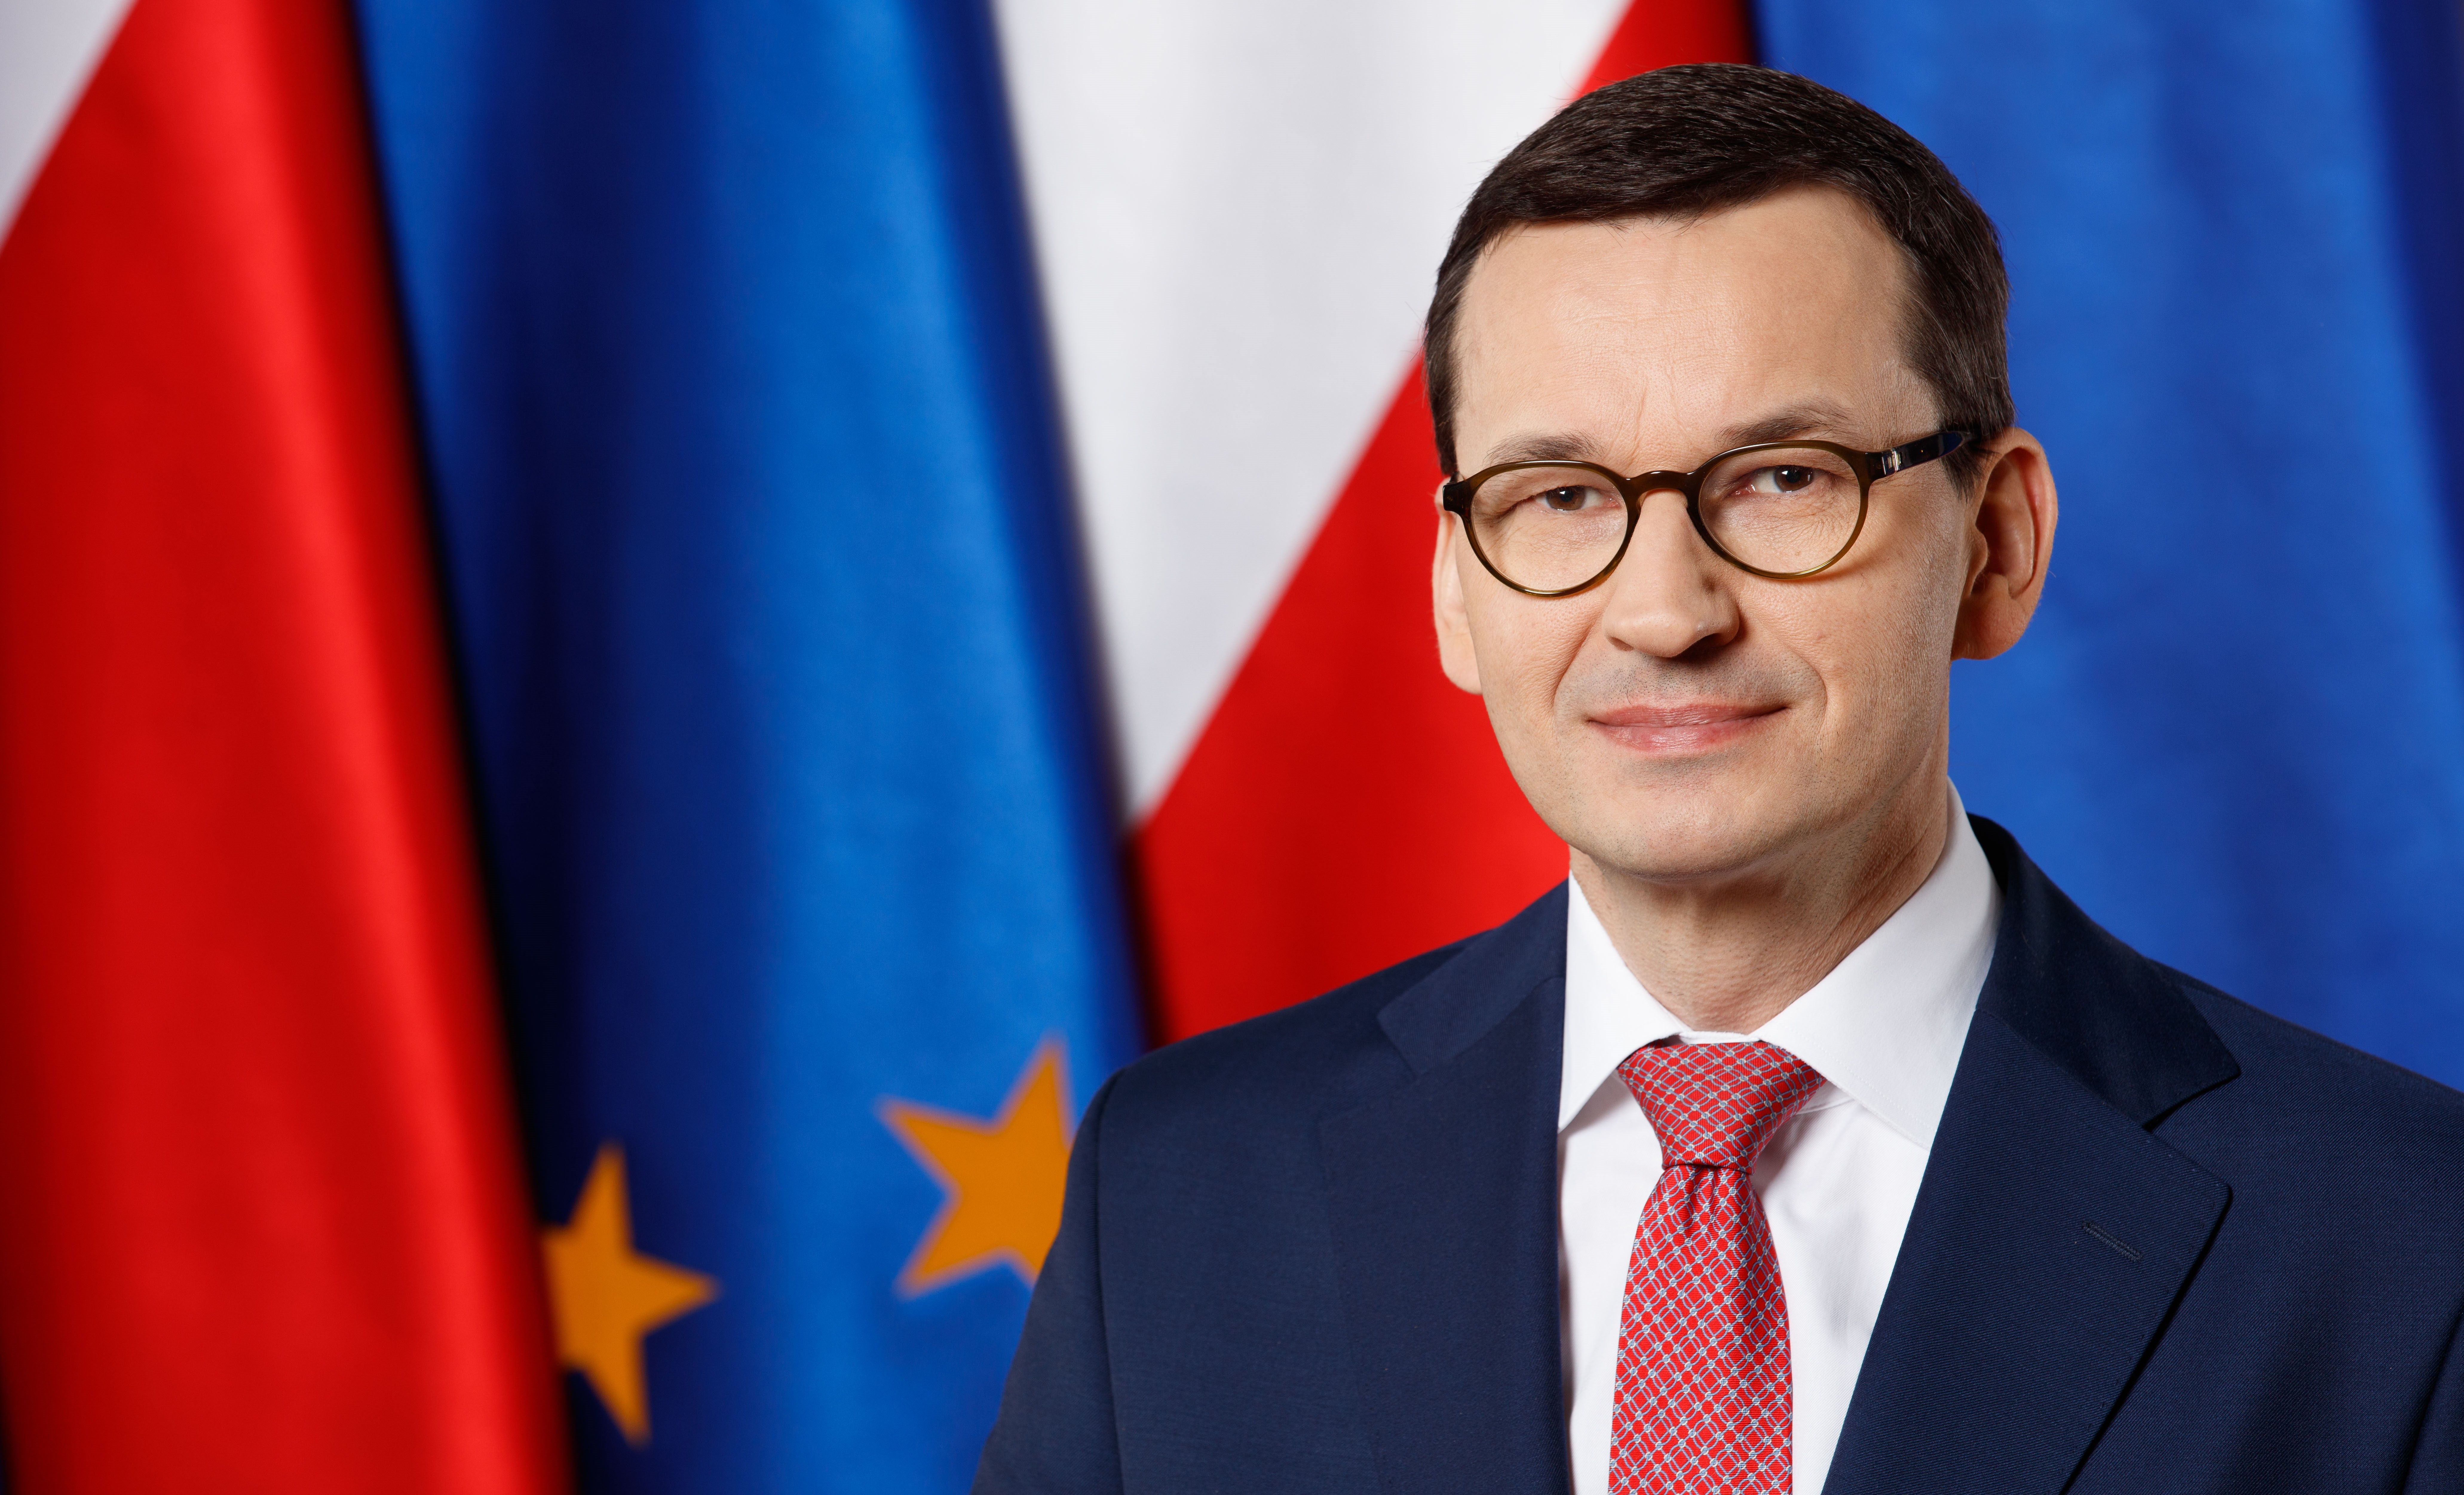 Jak podaje "Rzeczpospolita" Komisja Europejska zamierza zamrozić niemal wszystkie pieniądze przysługujące Polsce.